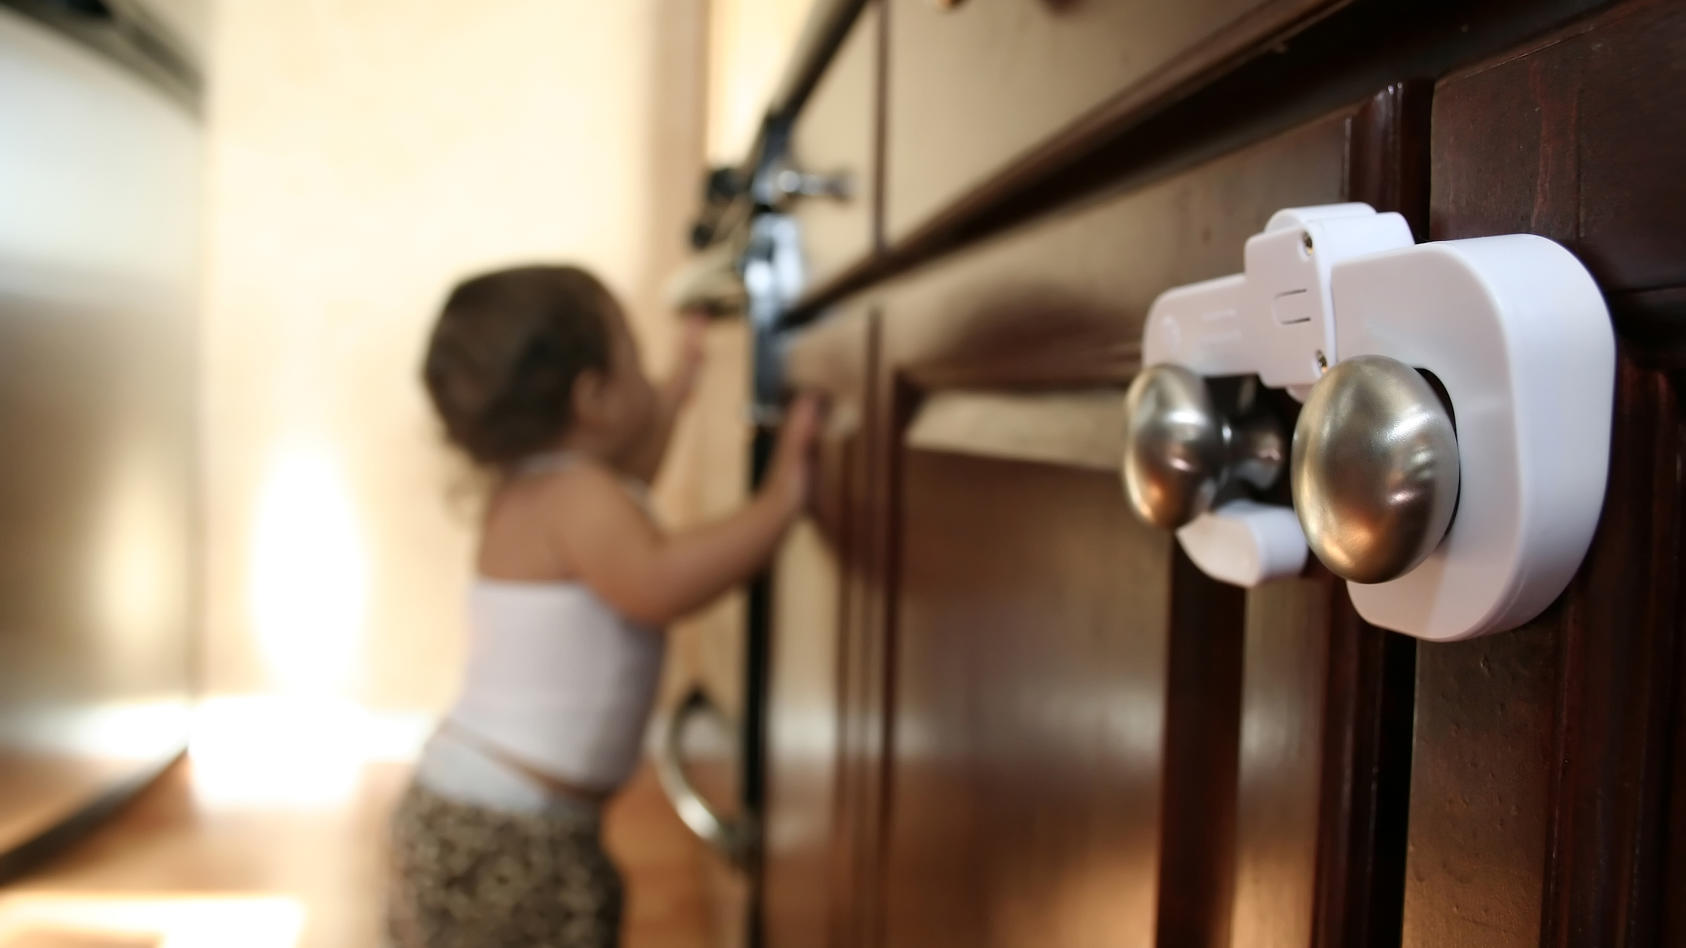 Schranktüren, Kabel, Steckdosen: Die gefährlichsten Dinge in der Wohnung sind für Babys oft am interessantesten. Daher ist es unabdingbar, die Wohnung rechtzeitig kindersicher zu machen.